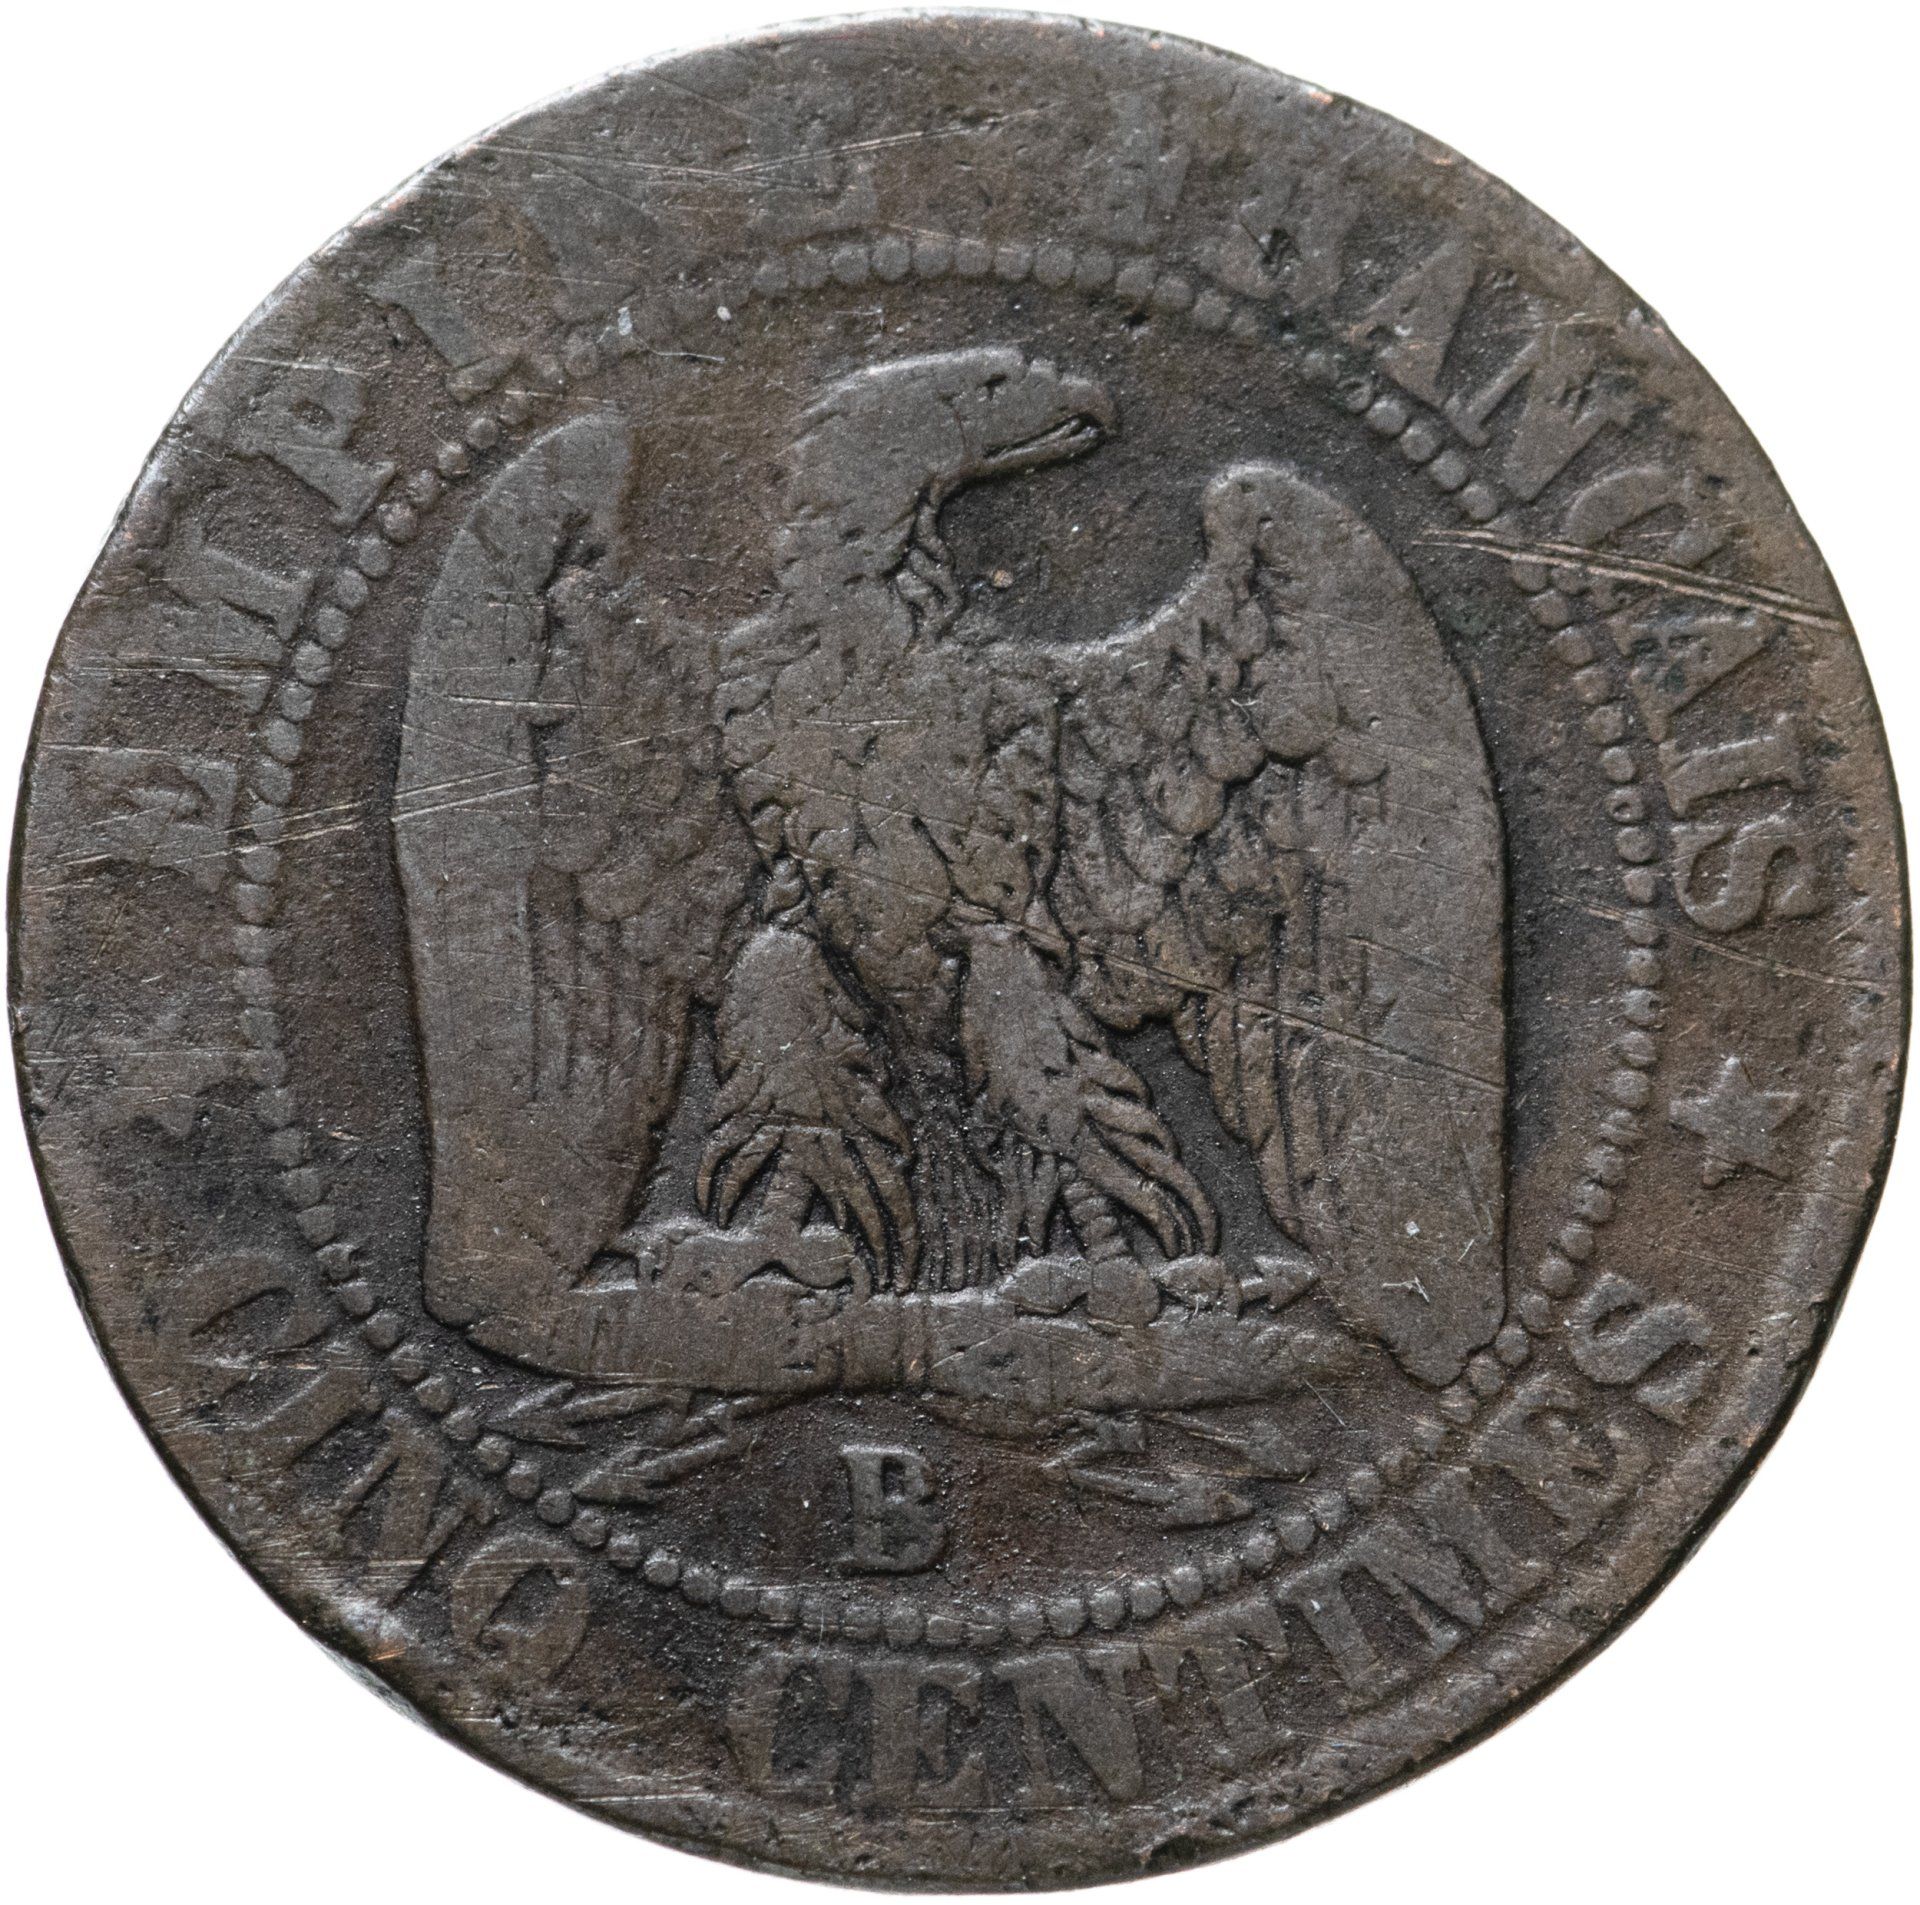 10 Сантимов Франция 1855. Монета Франции 1856 монета. Монеты Франции 1855 года.. Французские монеты 1855 года. Бывшая французская монета